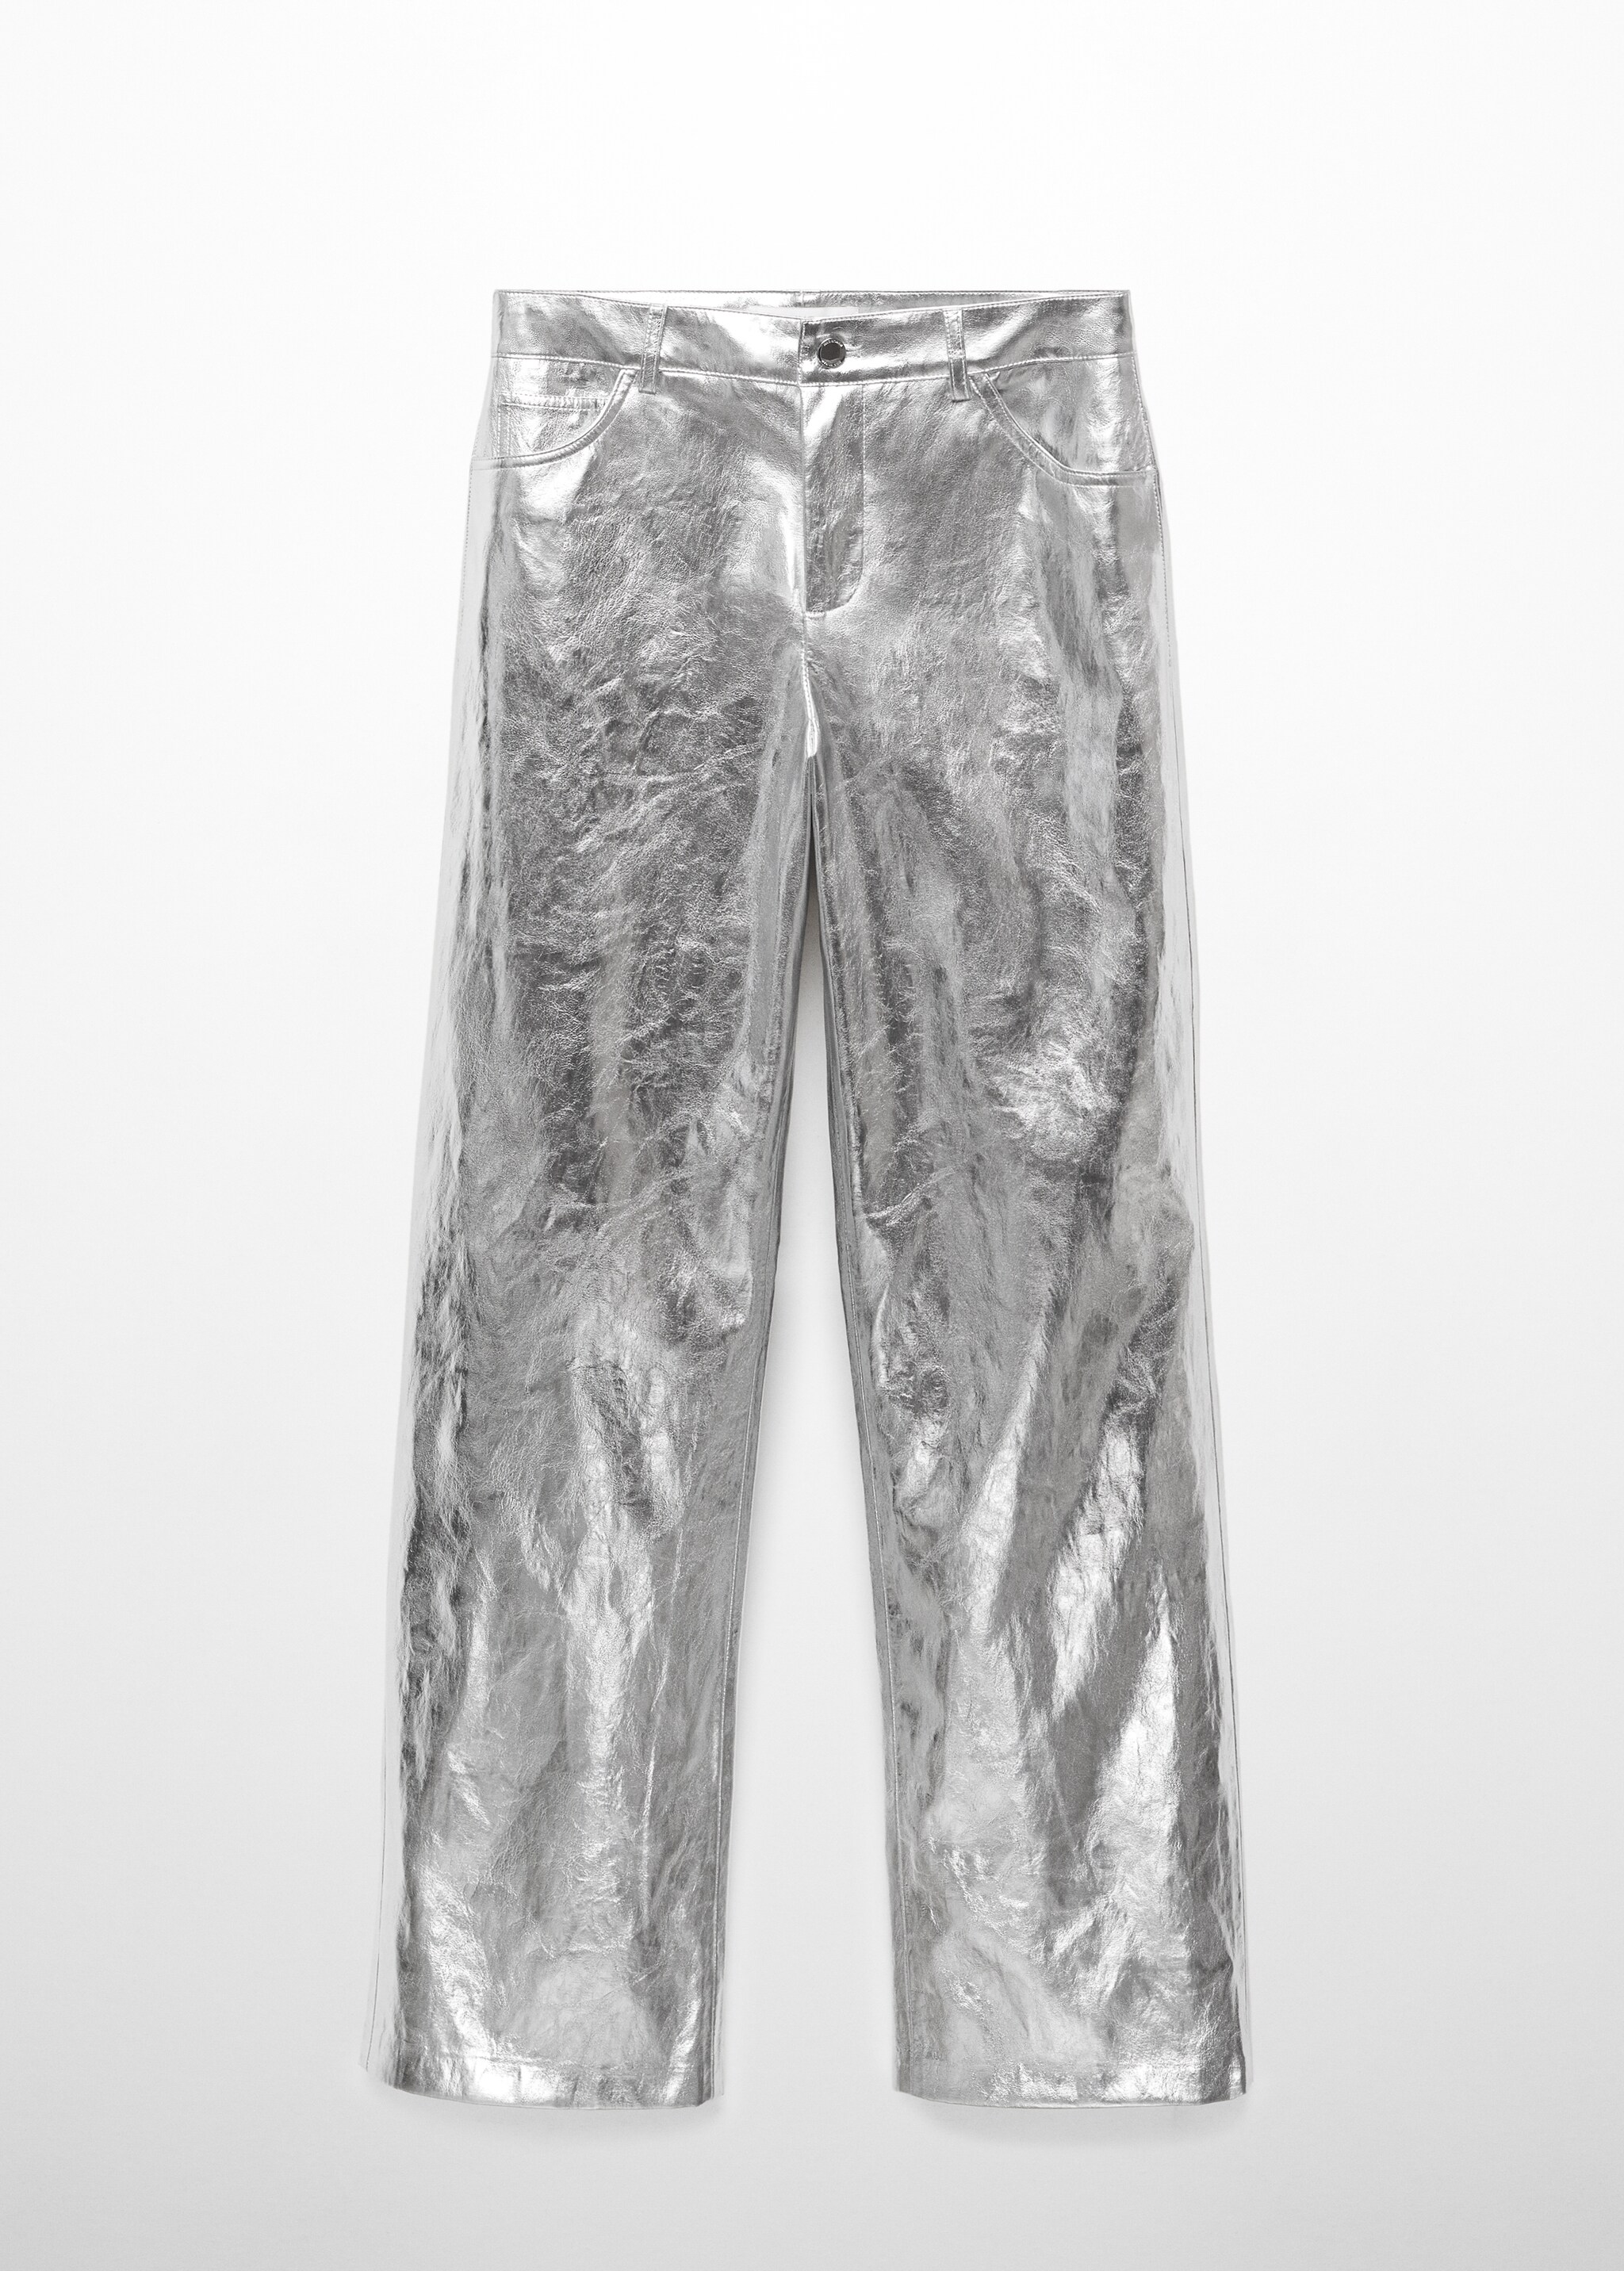 Pantaloni wideleg metallizzati - Articolo senza modello